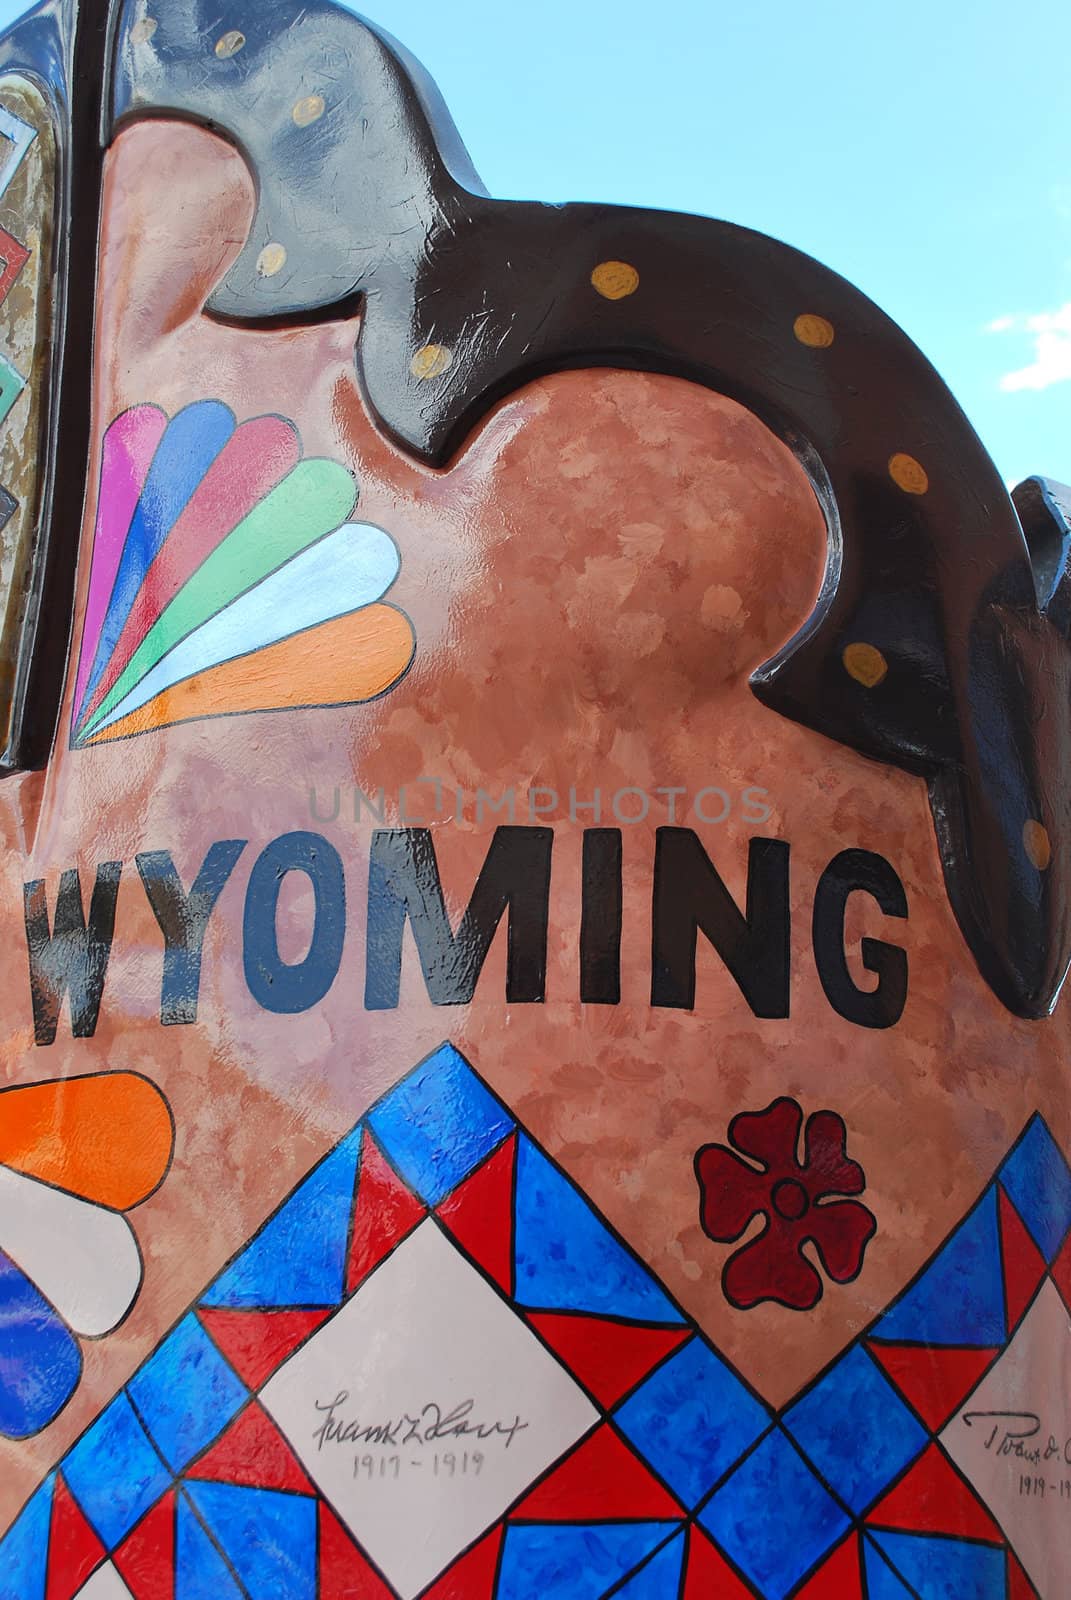 Cheyenne, Wyoming. by oscarcwilliams